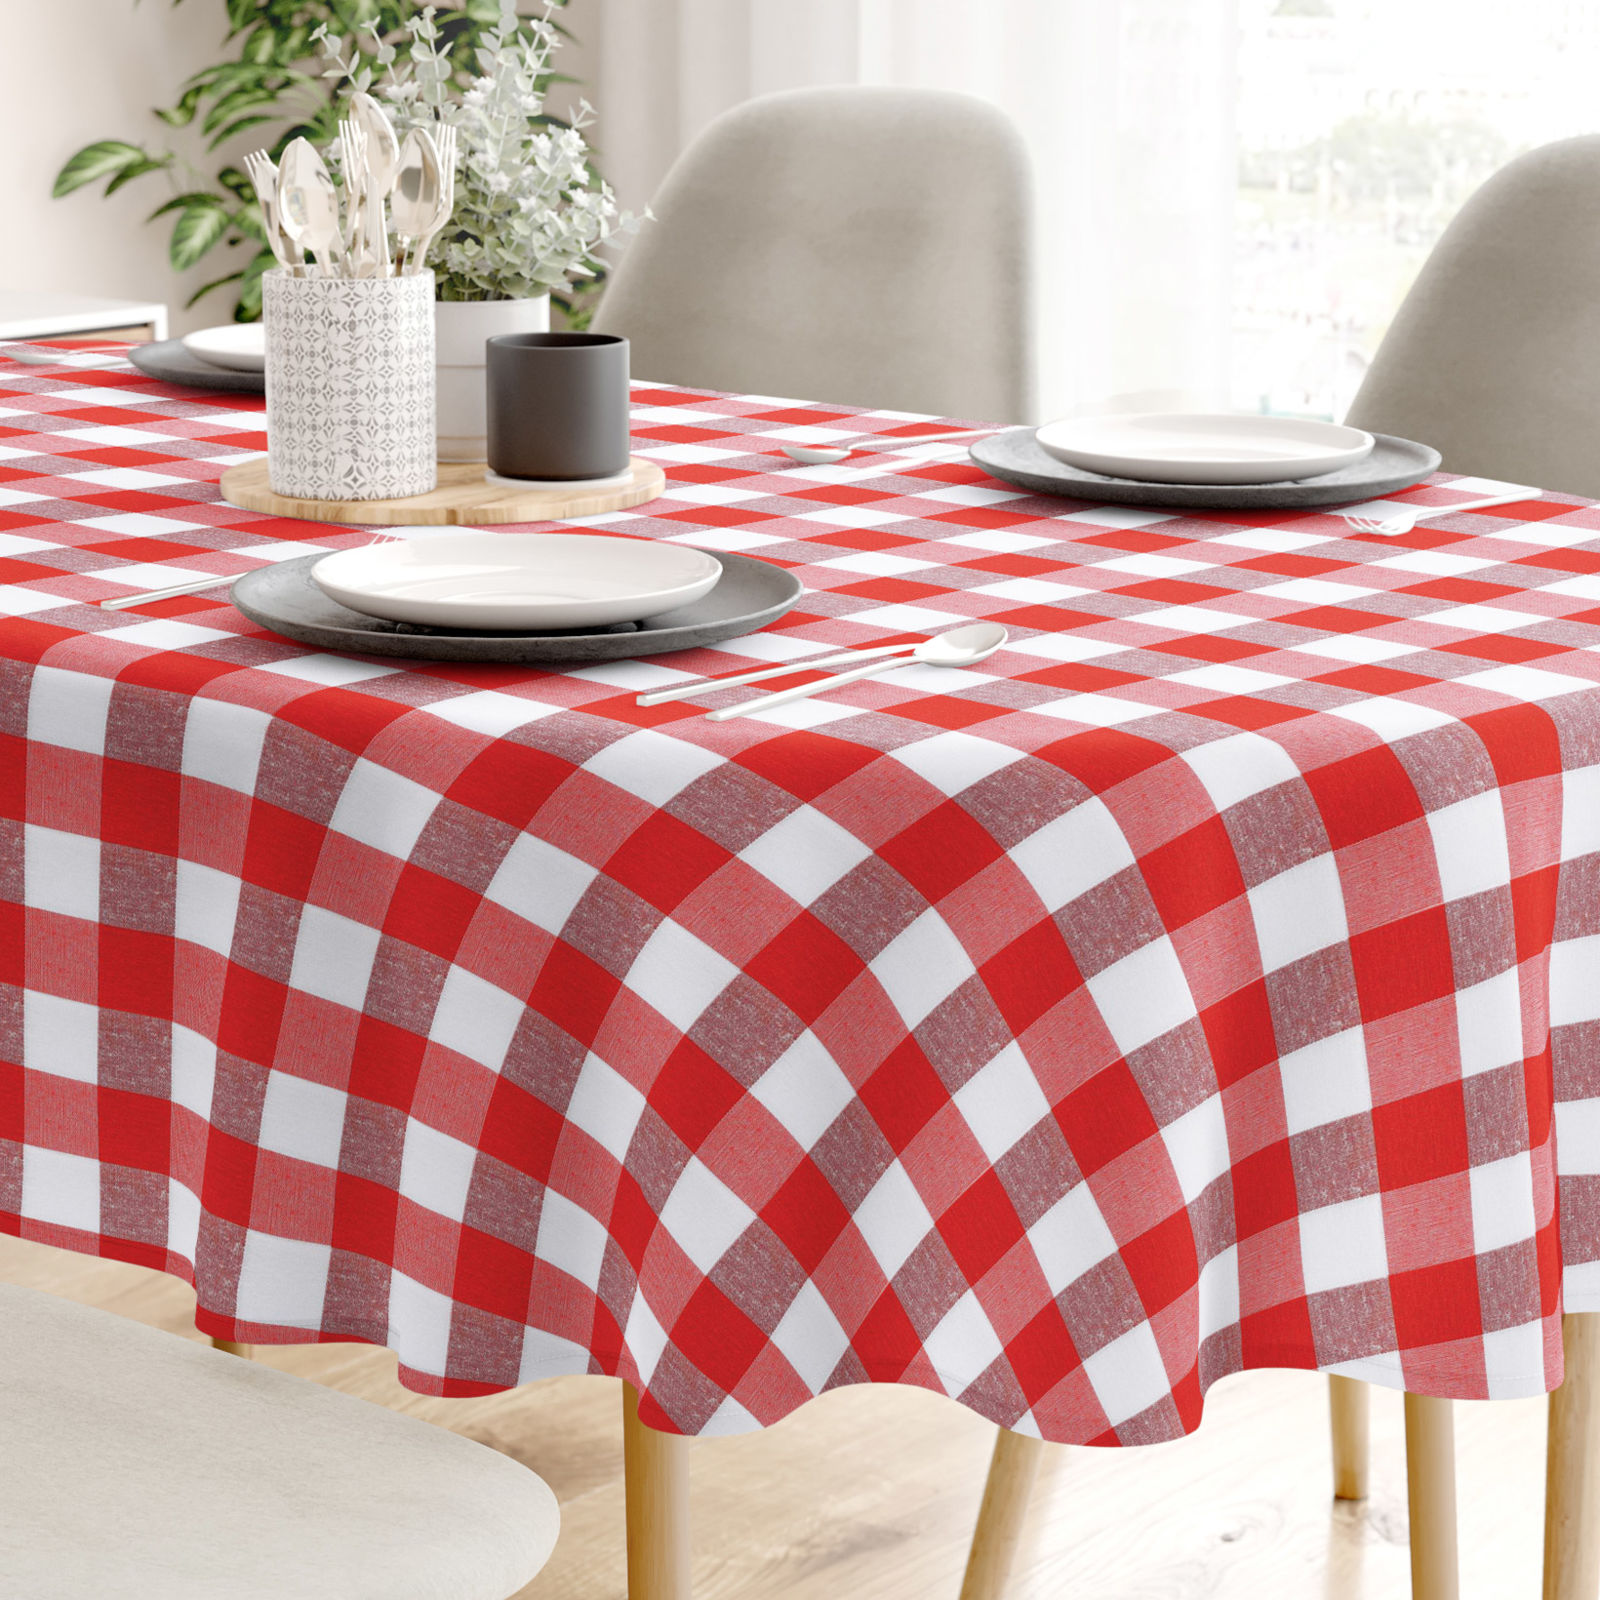 Față de masă decorativă  MENORCA - carouri mari roșii și albe - ovală